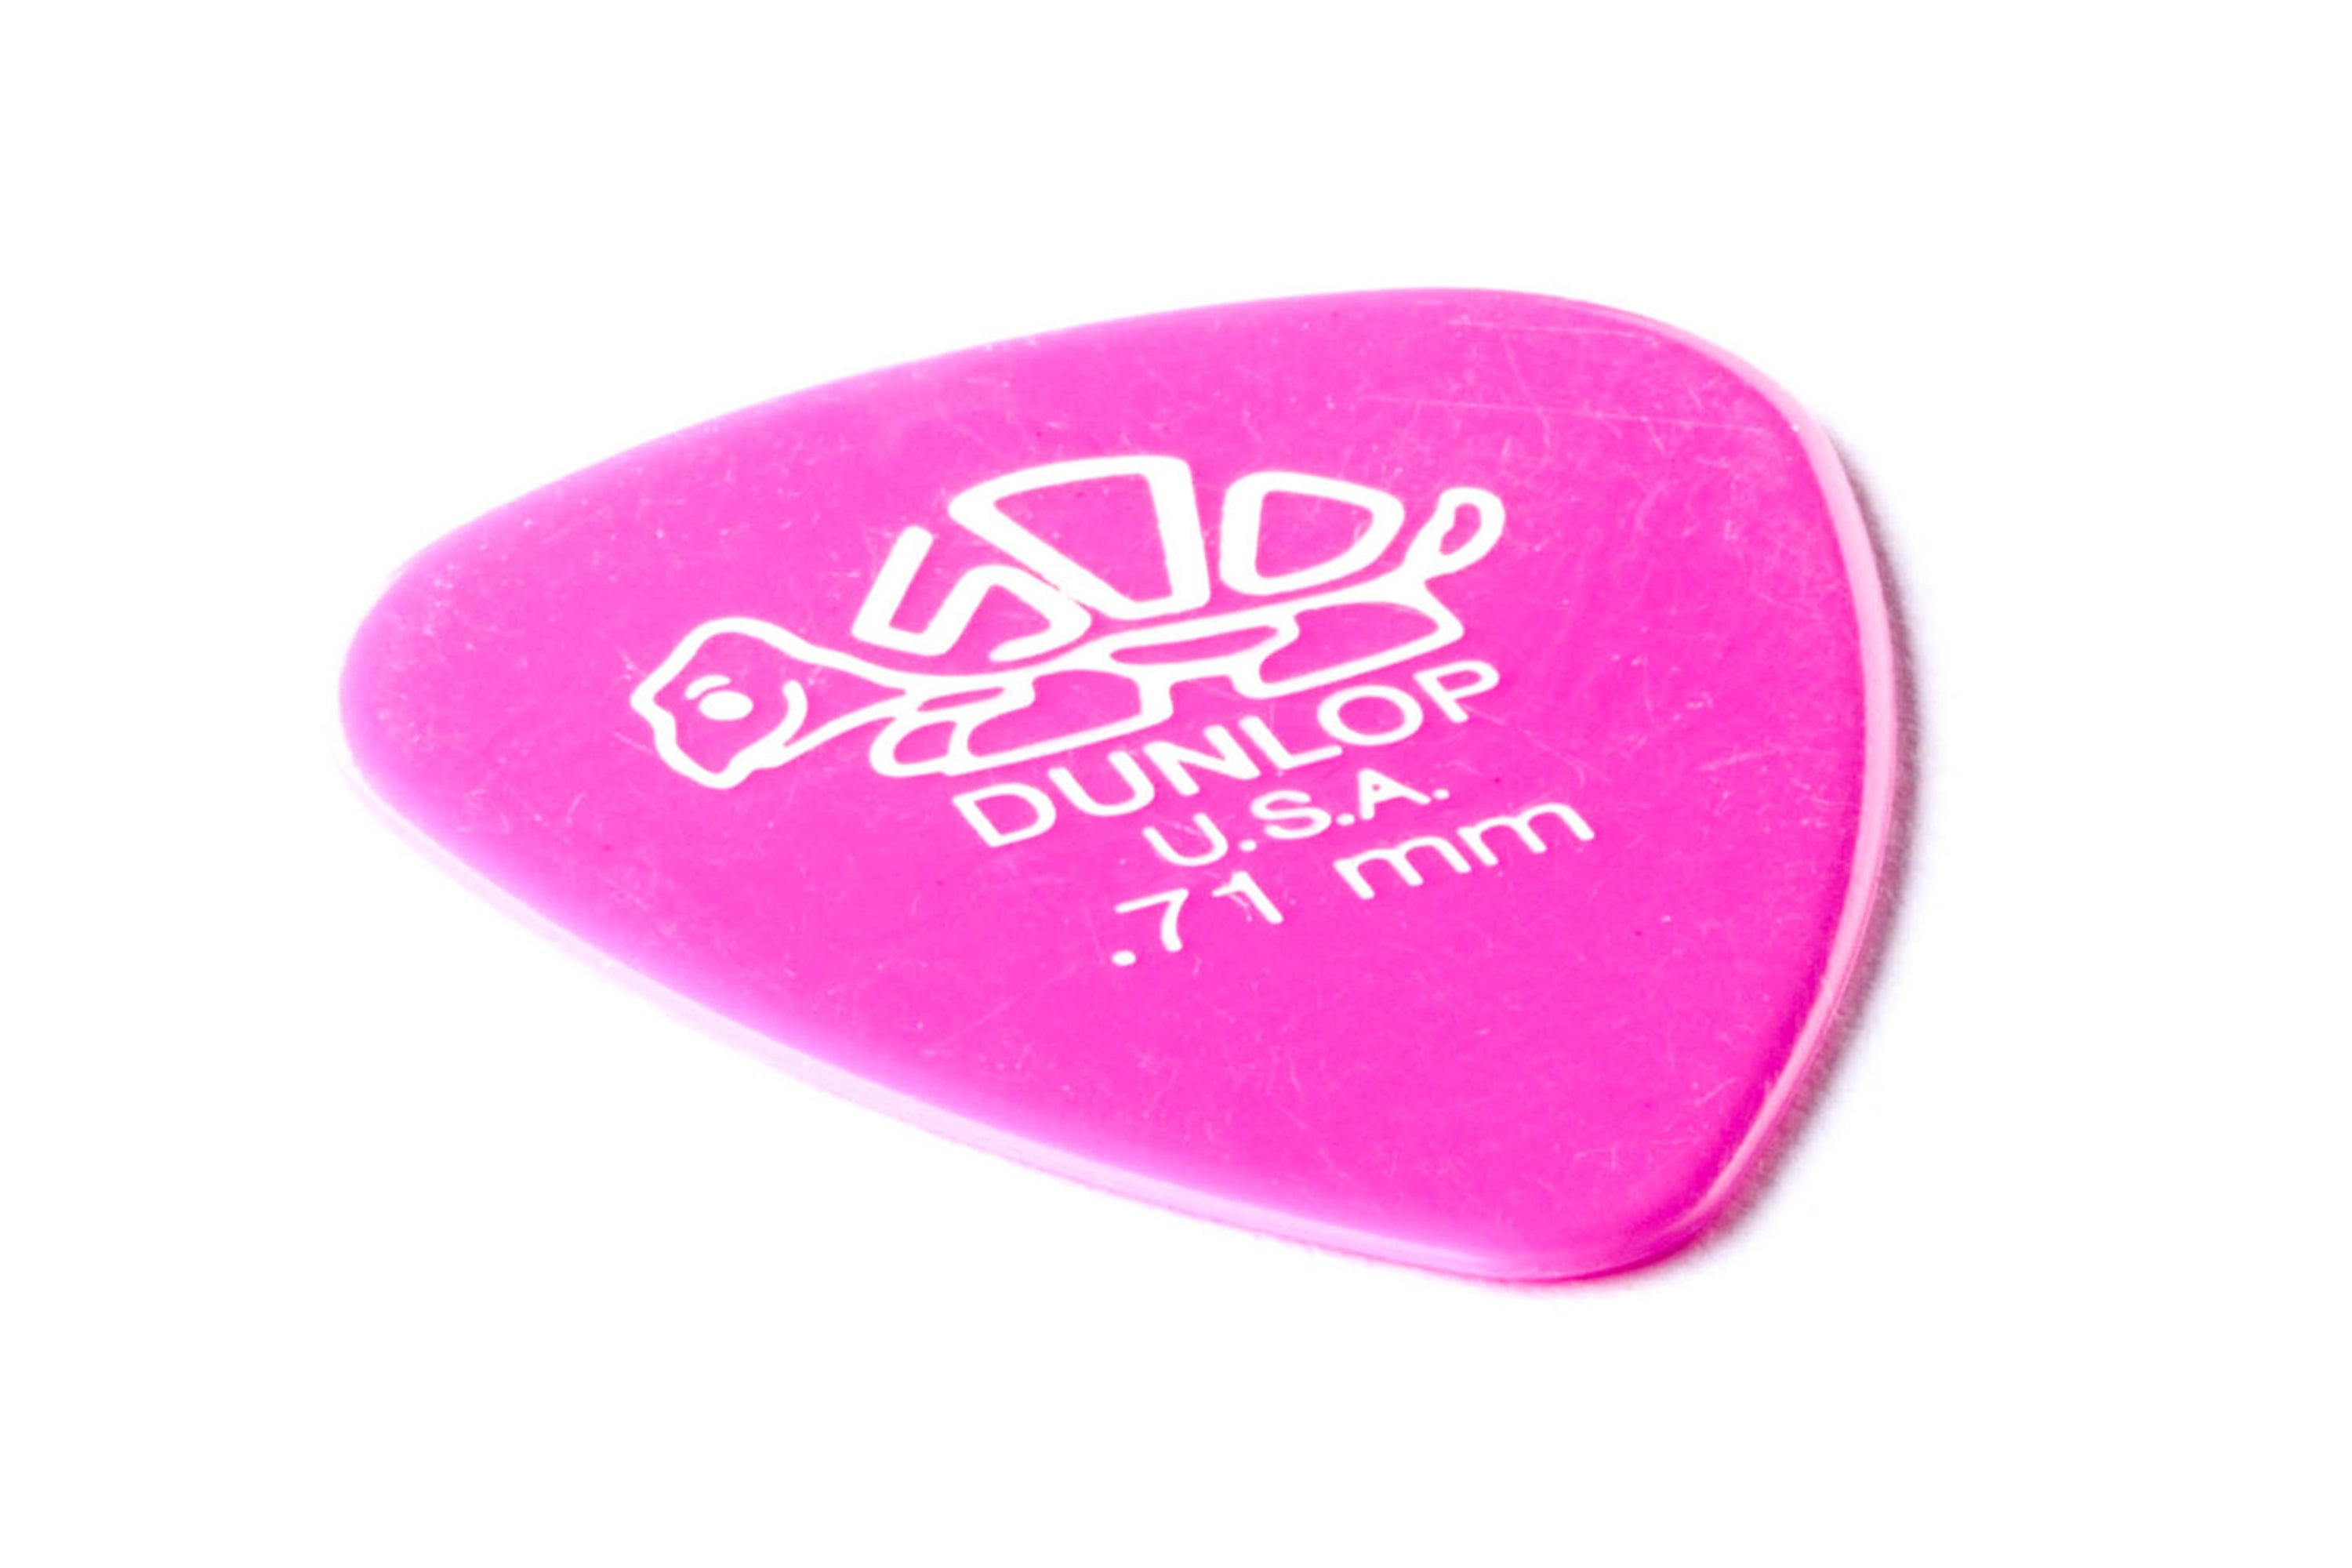 Dunlop Delrin 500 Standard .71mm Medium Pink Guitar & Ukulele Picks 12 Pack